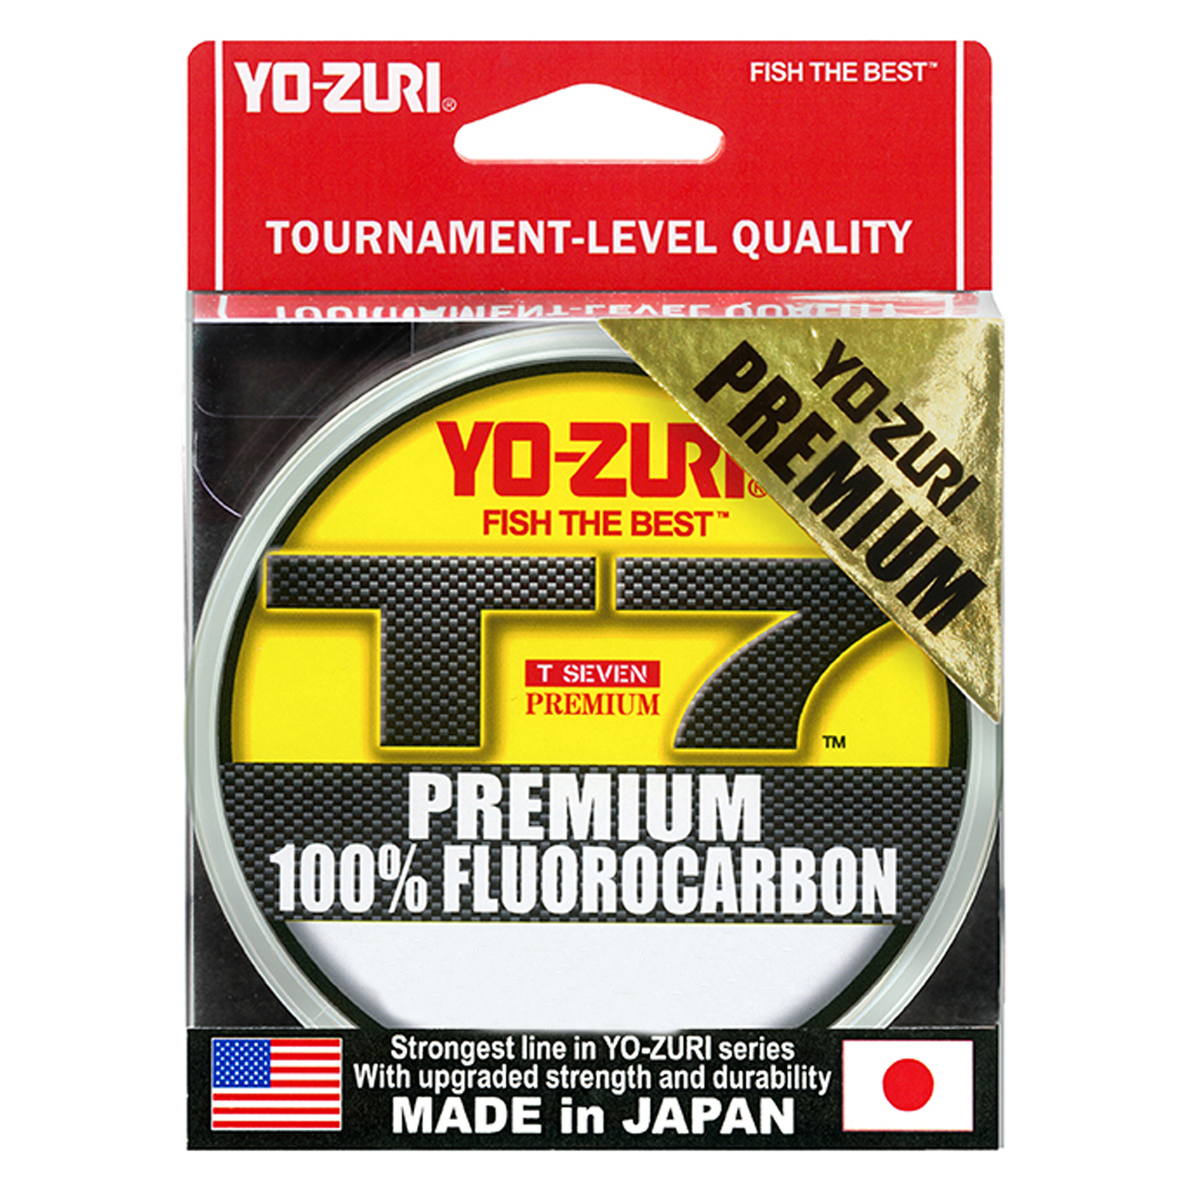 https://www.sportsmans.com/medias/yo-zuri-t7-premium-fluorocarbon-8lb-natural-clear-1000yd-1715316-1.jpg?context=bWFzdGVyfGltYWdlc3w5MzgxNjZ8aW1hZ2UvanBlZ3xhREl4TDJnMU1pOHhNREl3T0RReU9EWTFORFl5TWk4eE56RTFNekUyTFRGZlltRnpaUzFqYjI1MlpYSnphVzl1Um05eWJXRjBYekV5TURBdFkyOXVkbVZ5YzJsdmJrWnZjbTFoZEF8YjFiMTIzOWIxMTczODYyNjUwODdhNWZiODE4MWFlMzRjZGRlMmQ5ZDExYTkzMjkwMGI5MTllZDgwYTZmY2Y5Zg